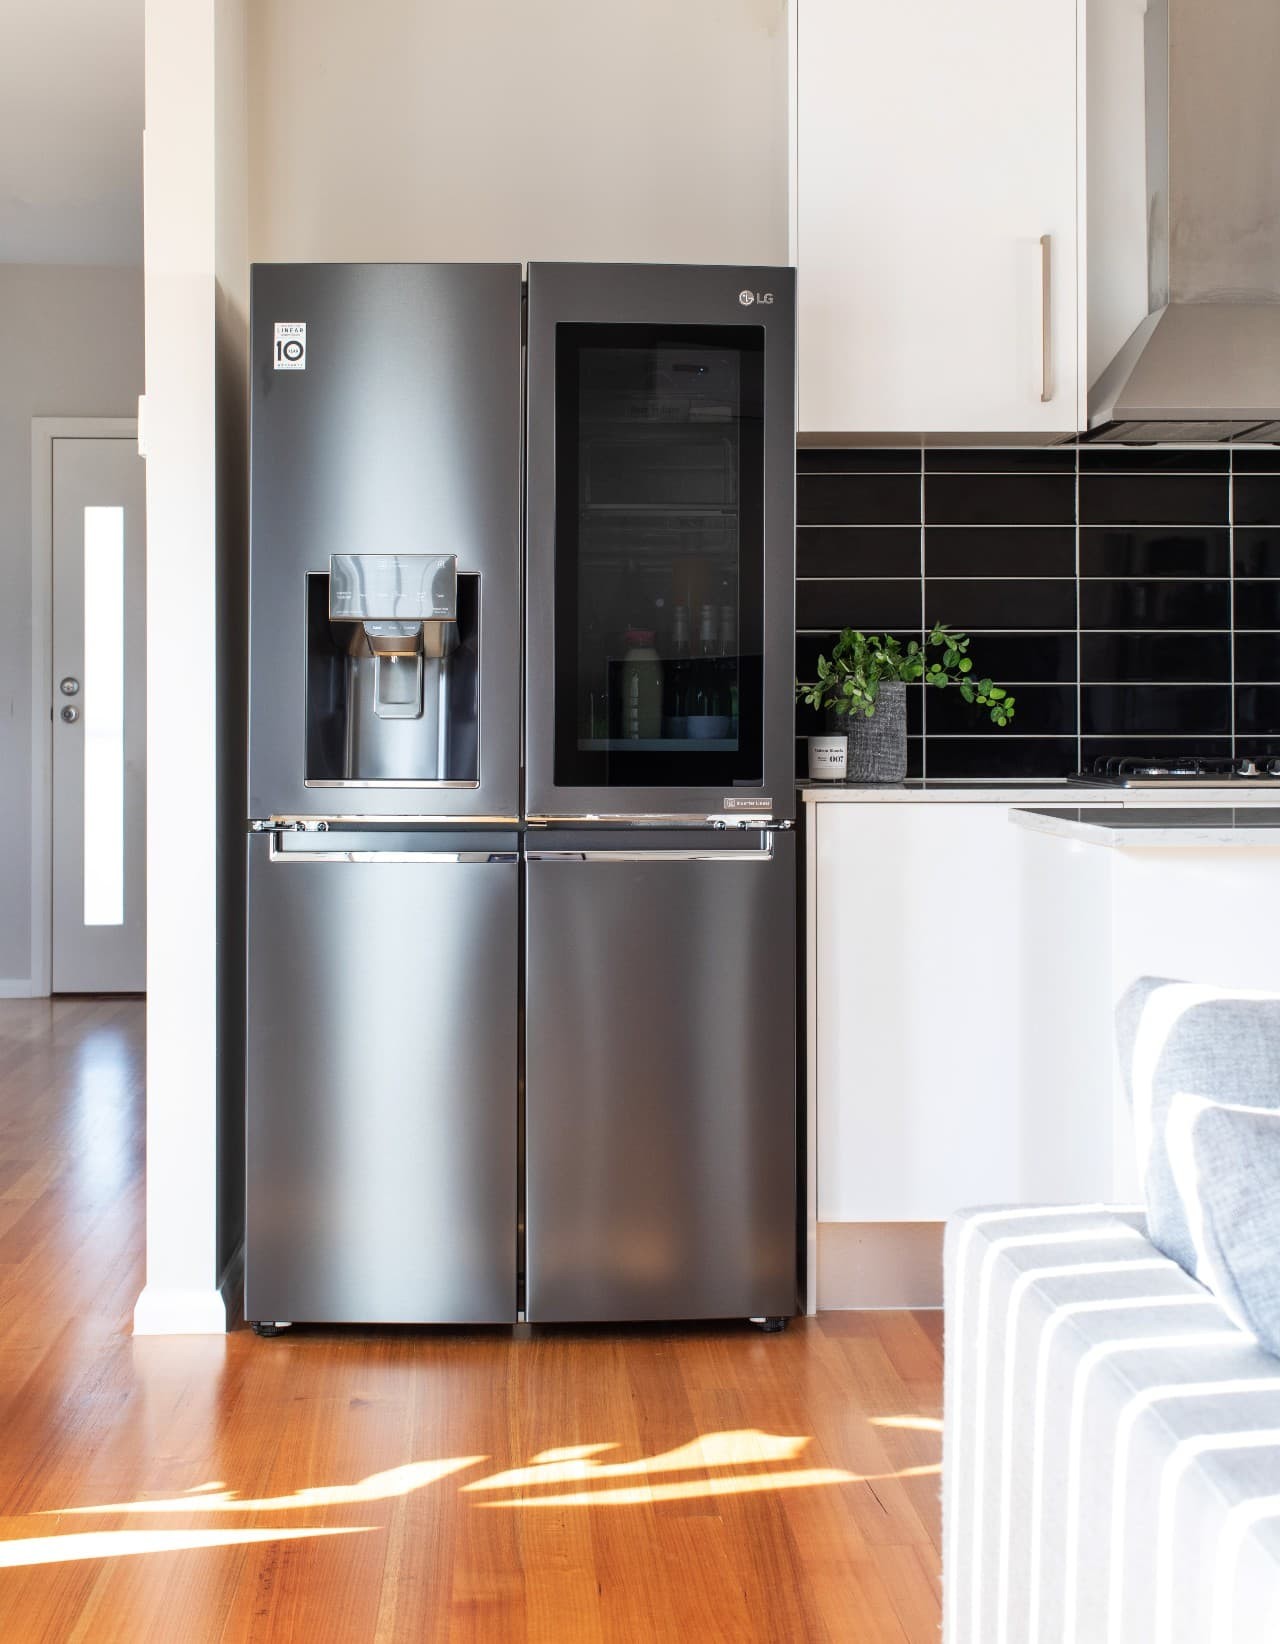 LG French Door fridge with InstaView Door in Door review